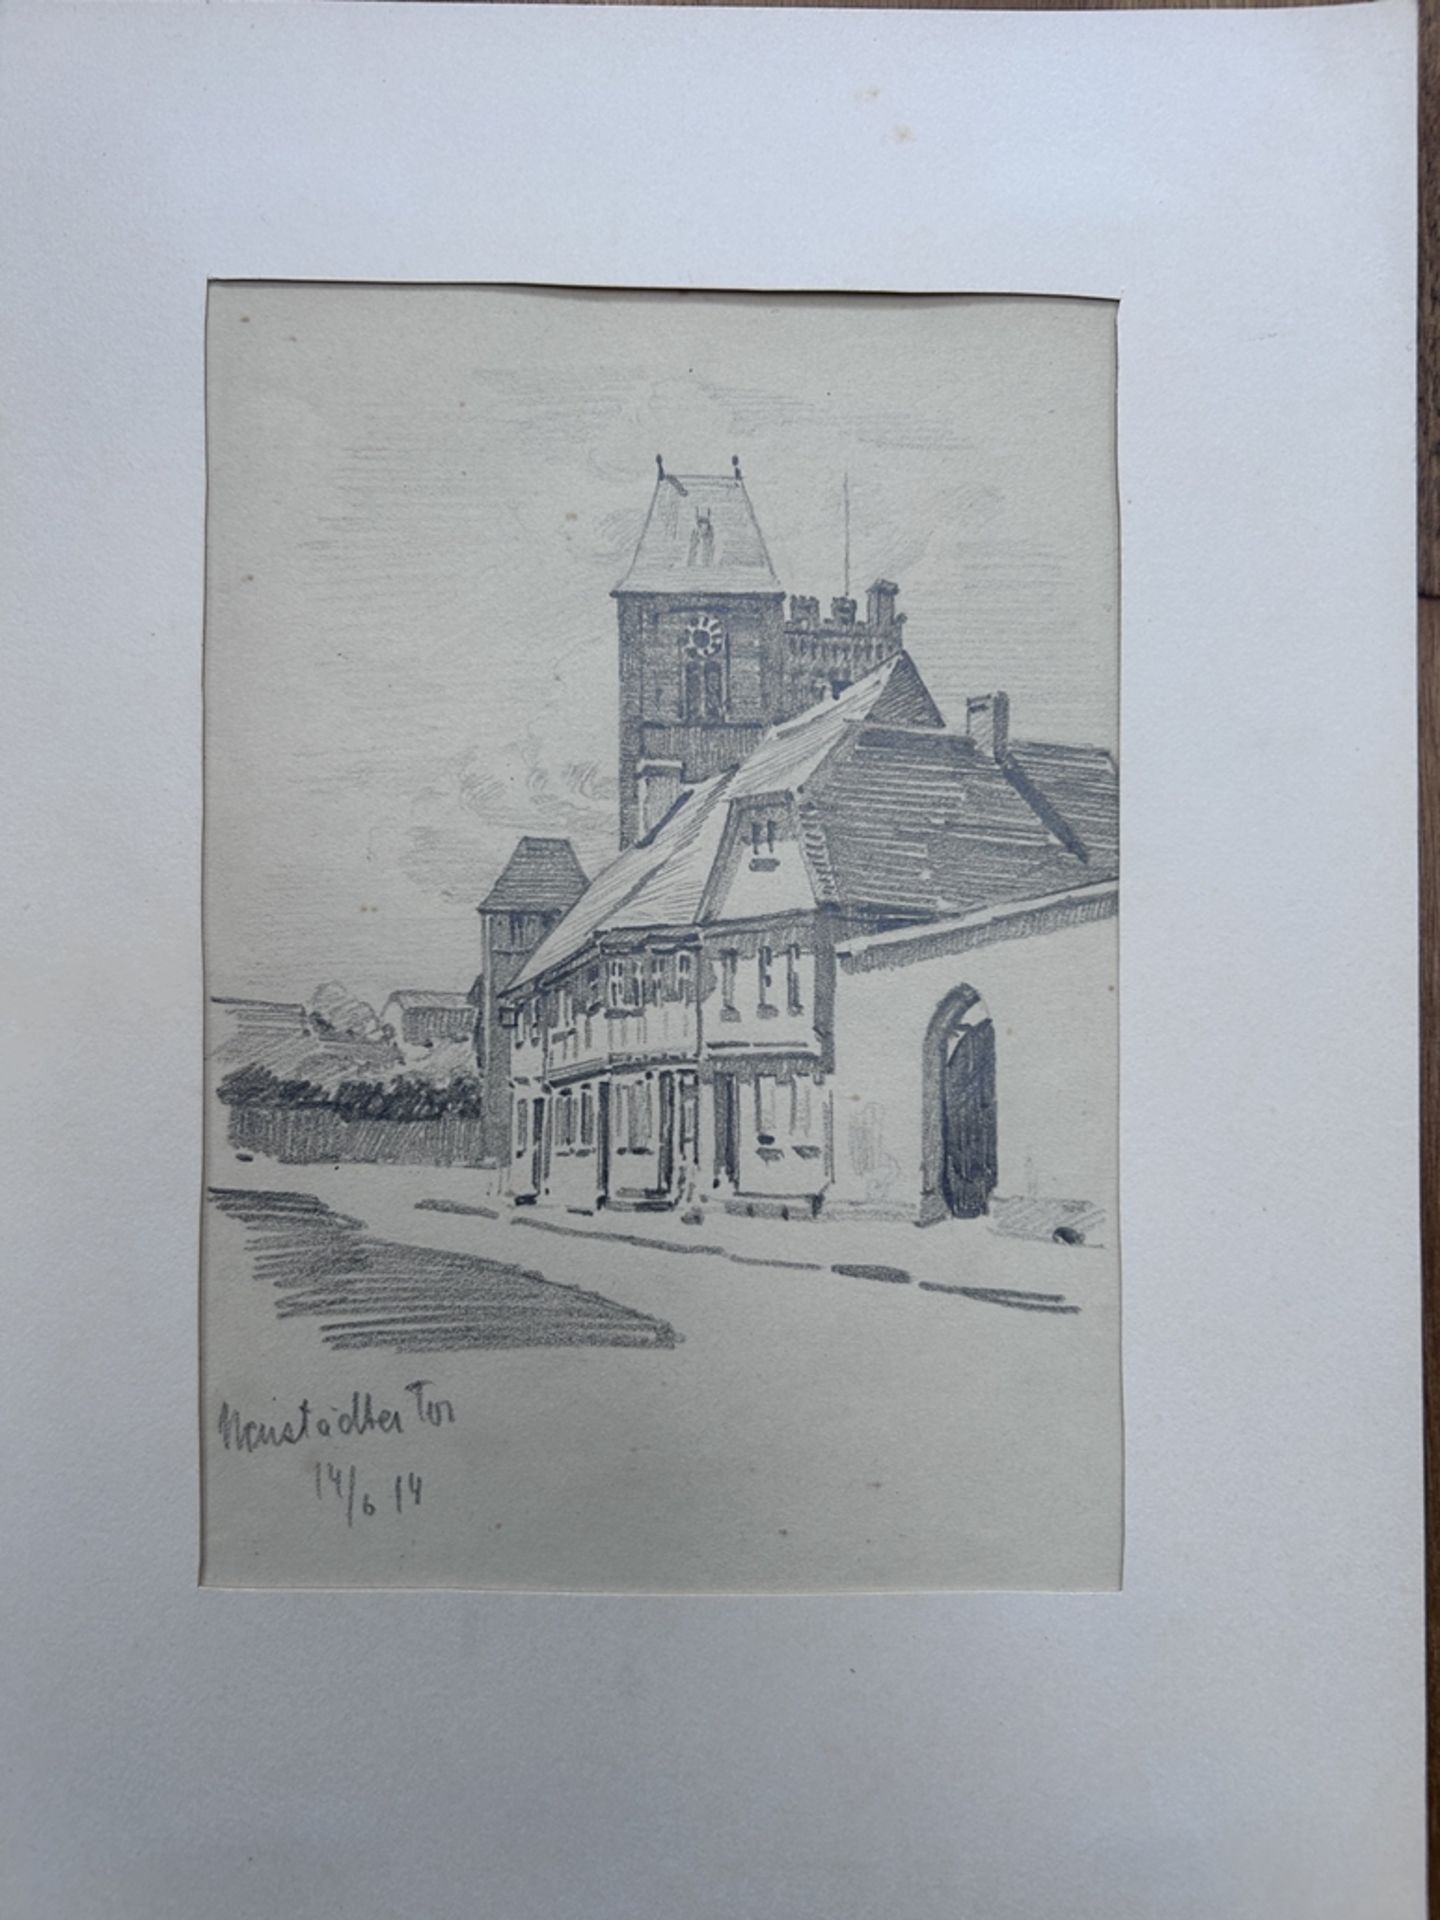 ER, 1914, 2x Stiftzeichnungen, wohl beide Gießen, 1x Neustädter Tor in PP., BG je. 30x23 cm - Image 2 of 5